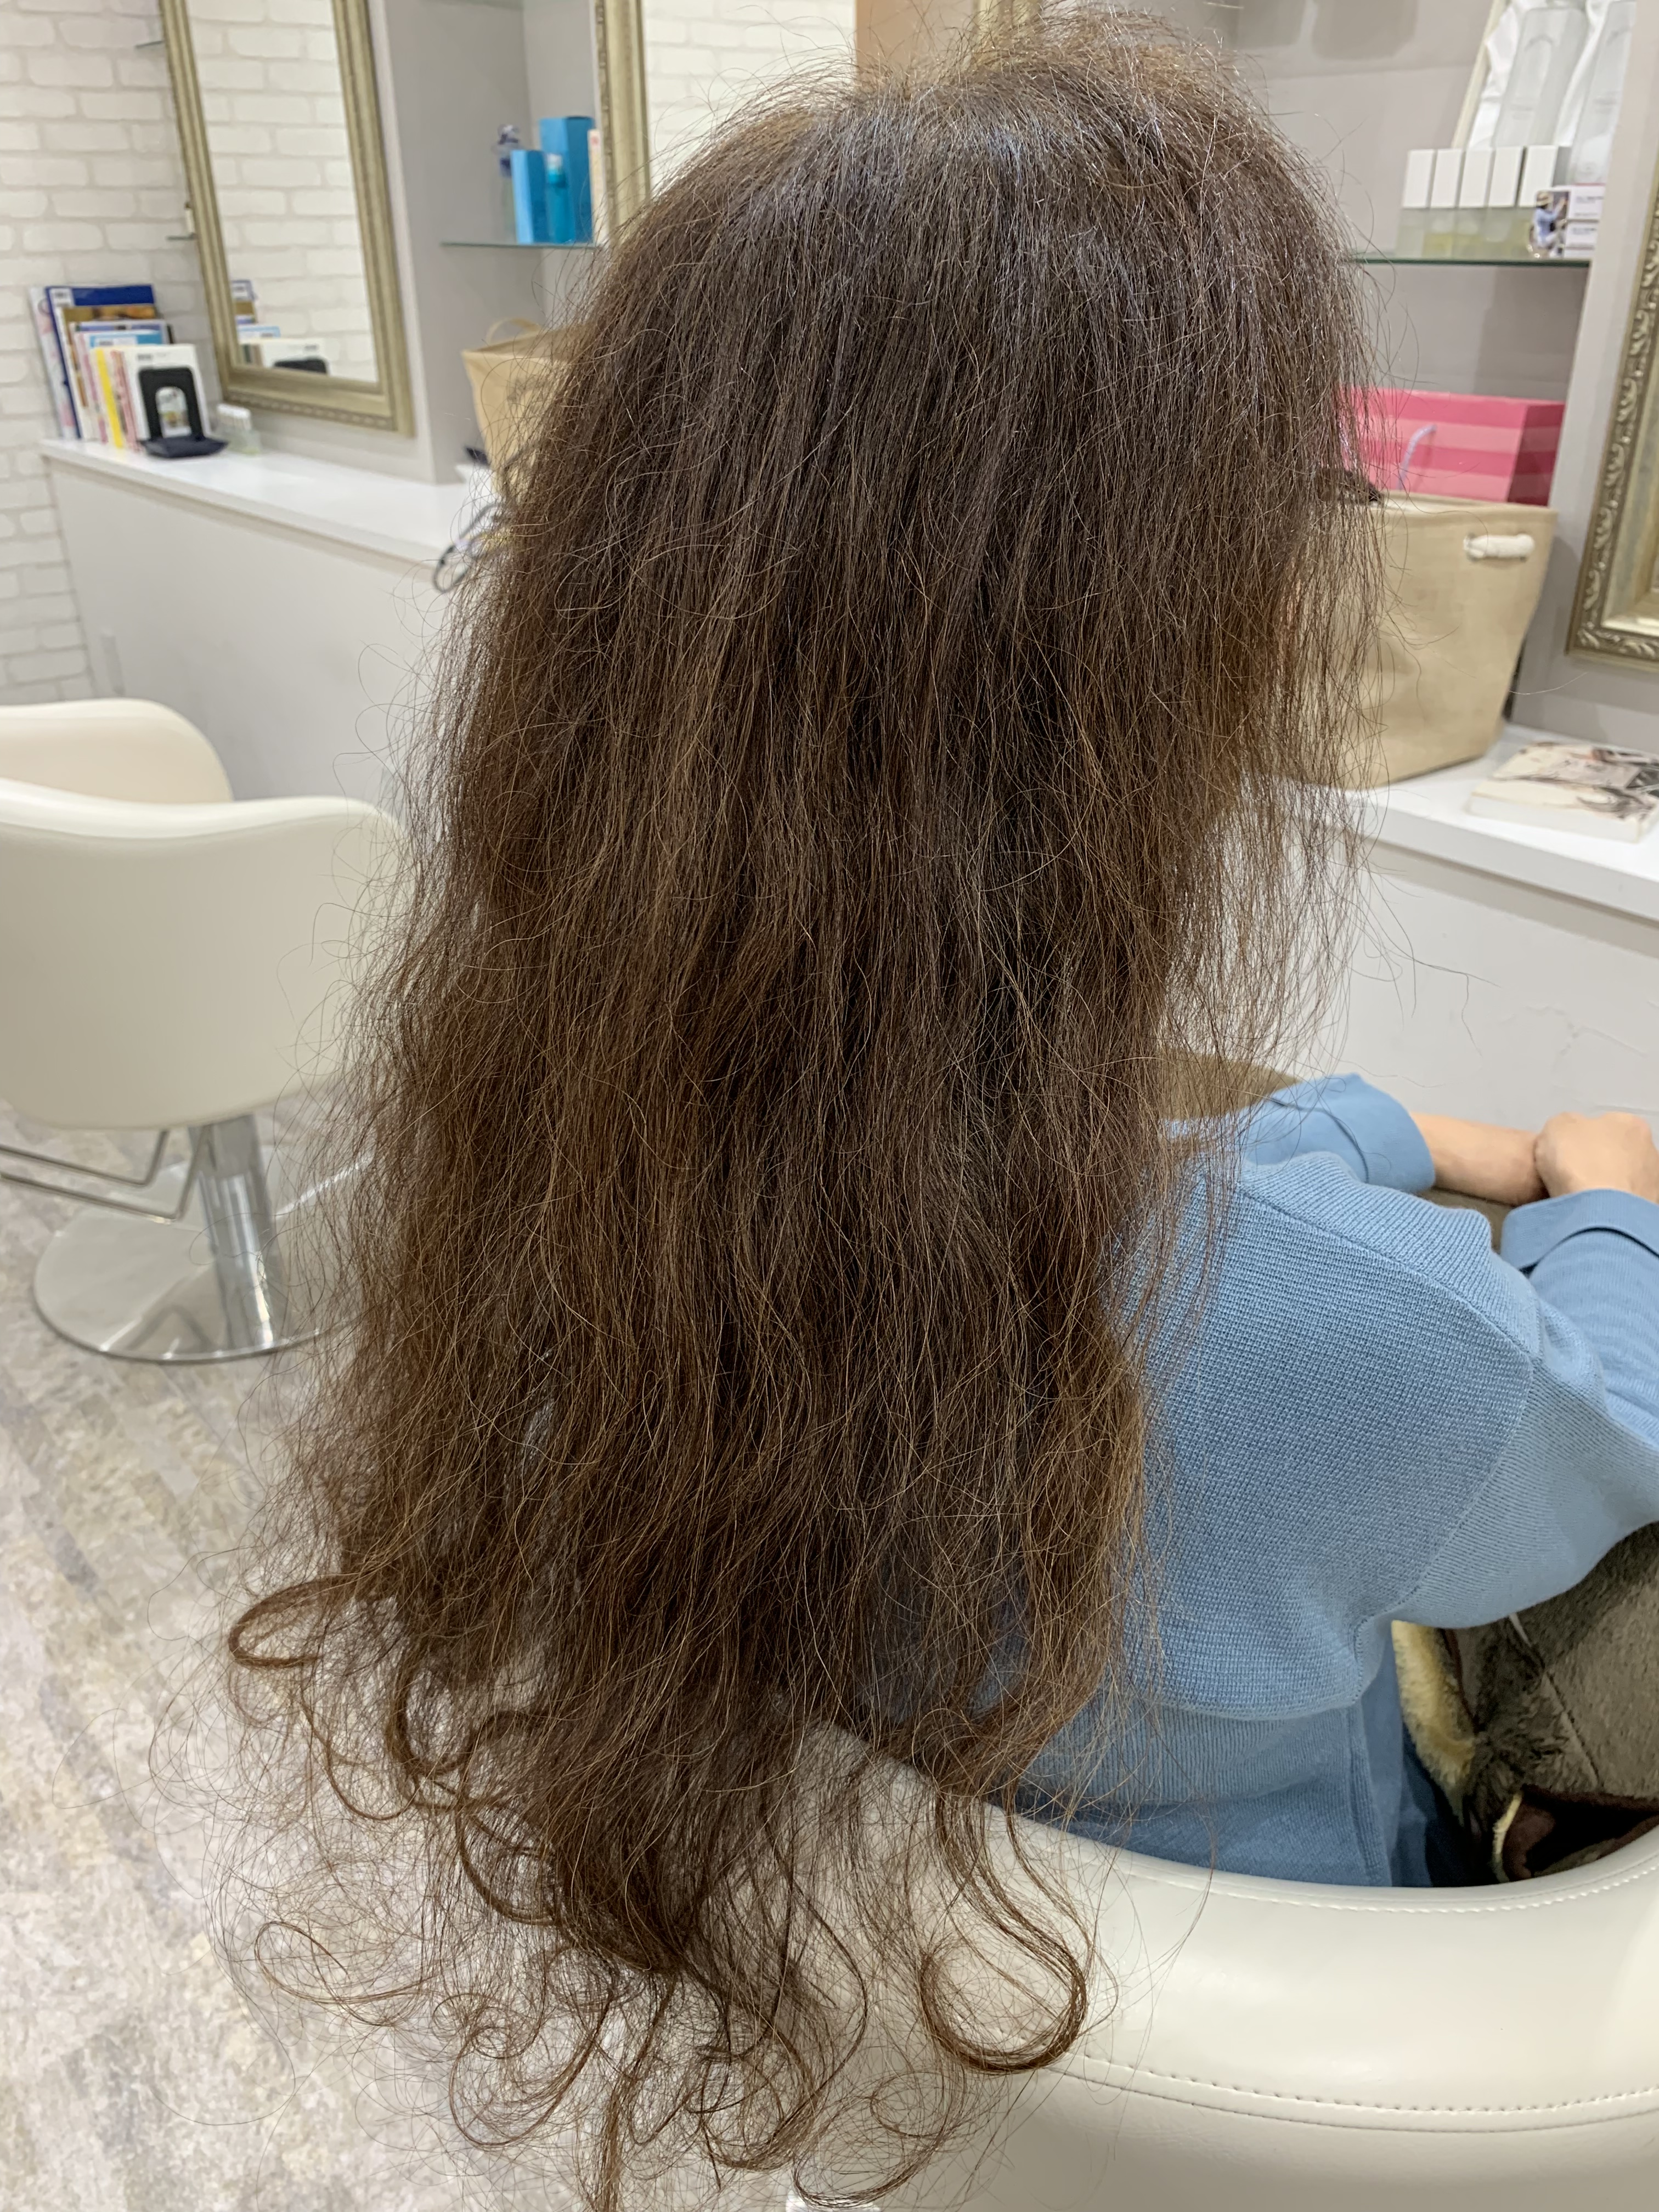 アンチエイジング エイジングによるふわふわ もわもわとしたまとまらない大人世代の髪の悩みへの髪質改善 京都 東京の美容室 縮毛矯正 ダメージ毛 ヘアケアに専門特化した藤原隆一の美容師ブログ